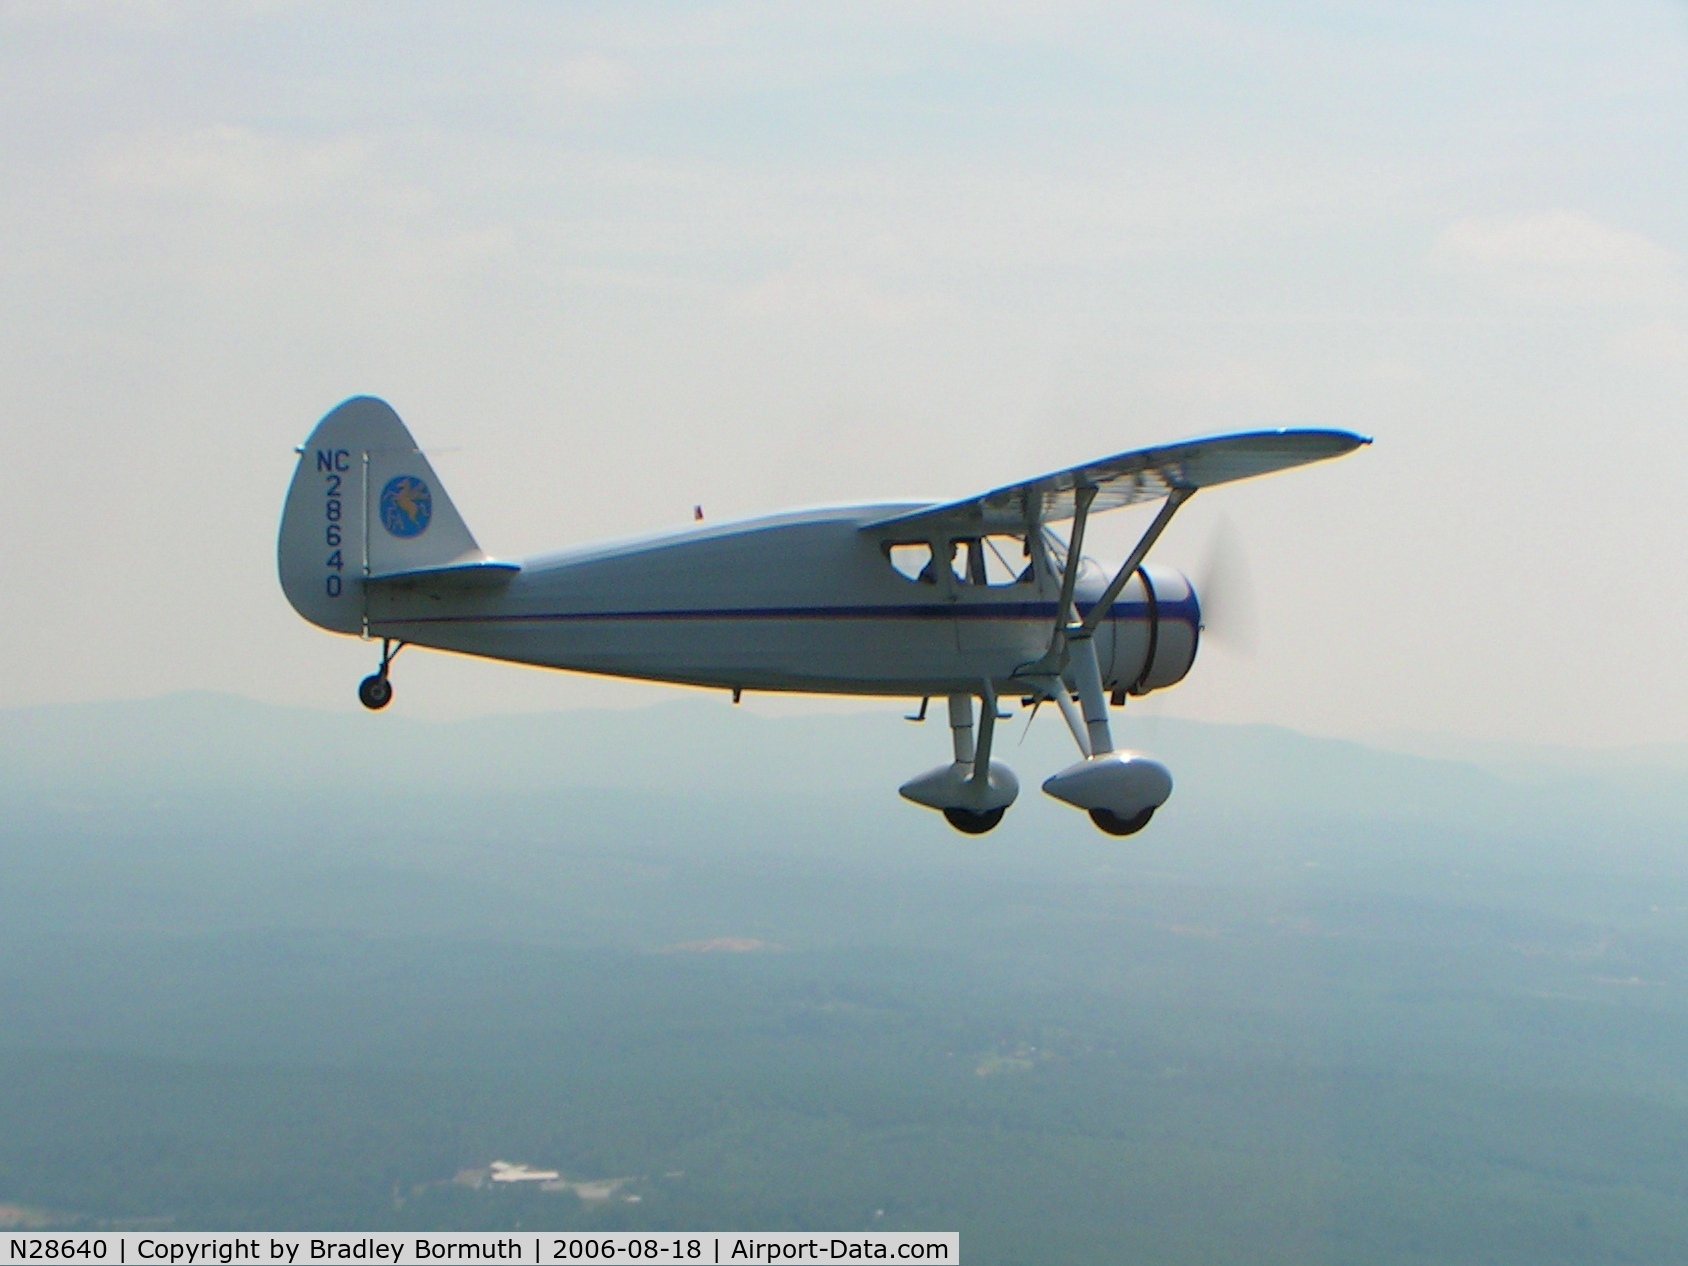 N28640, 1940 Fairchild 24W-40 C/N W40-160, Aerial photo taken near NC52 over Morganton, NC where this aircraft is based.